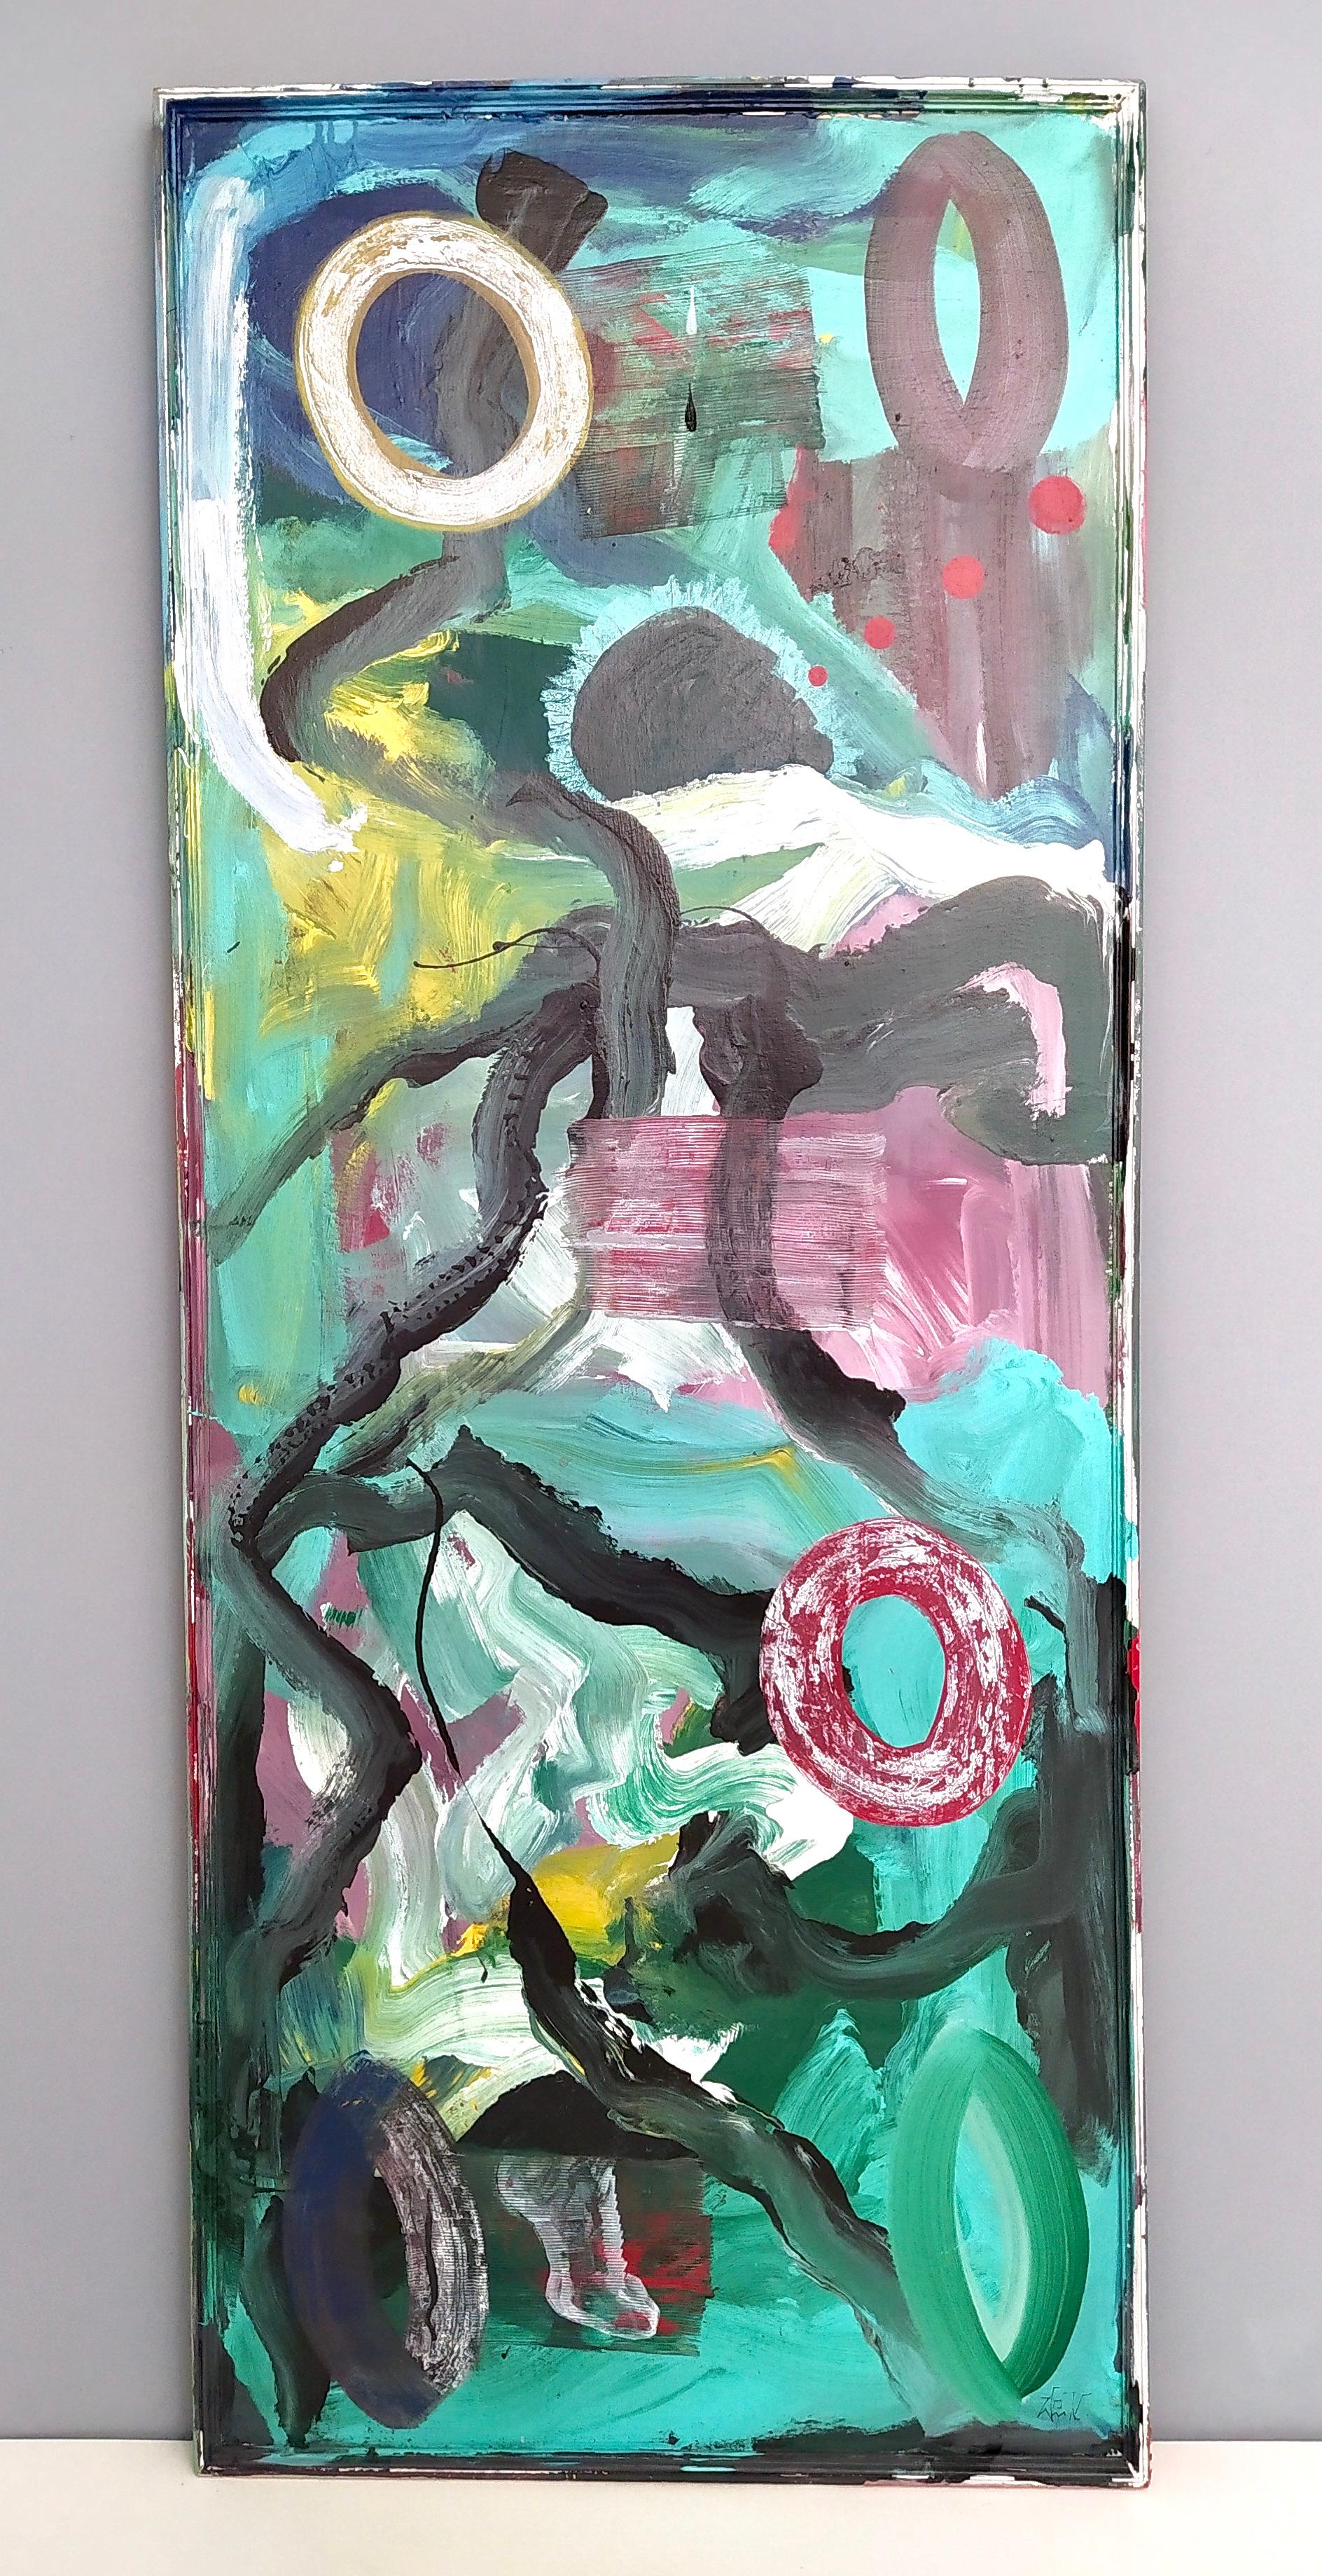 « In un Mare di pittura » (In un Mare di pittura) d'Enzio Wenk, 2019, acrylique sur toile, néoexpressionnisme